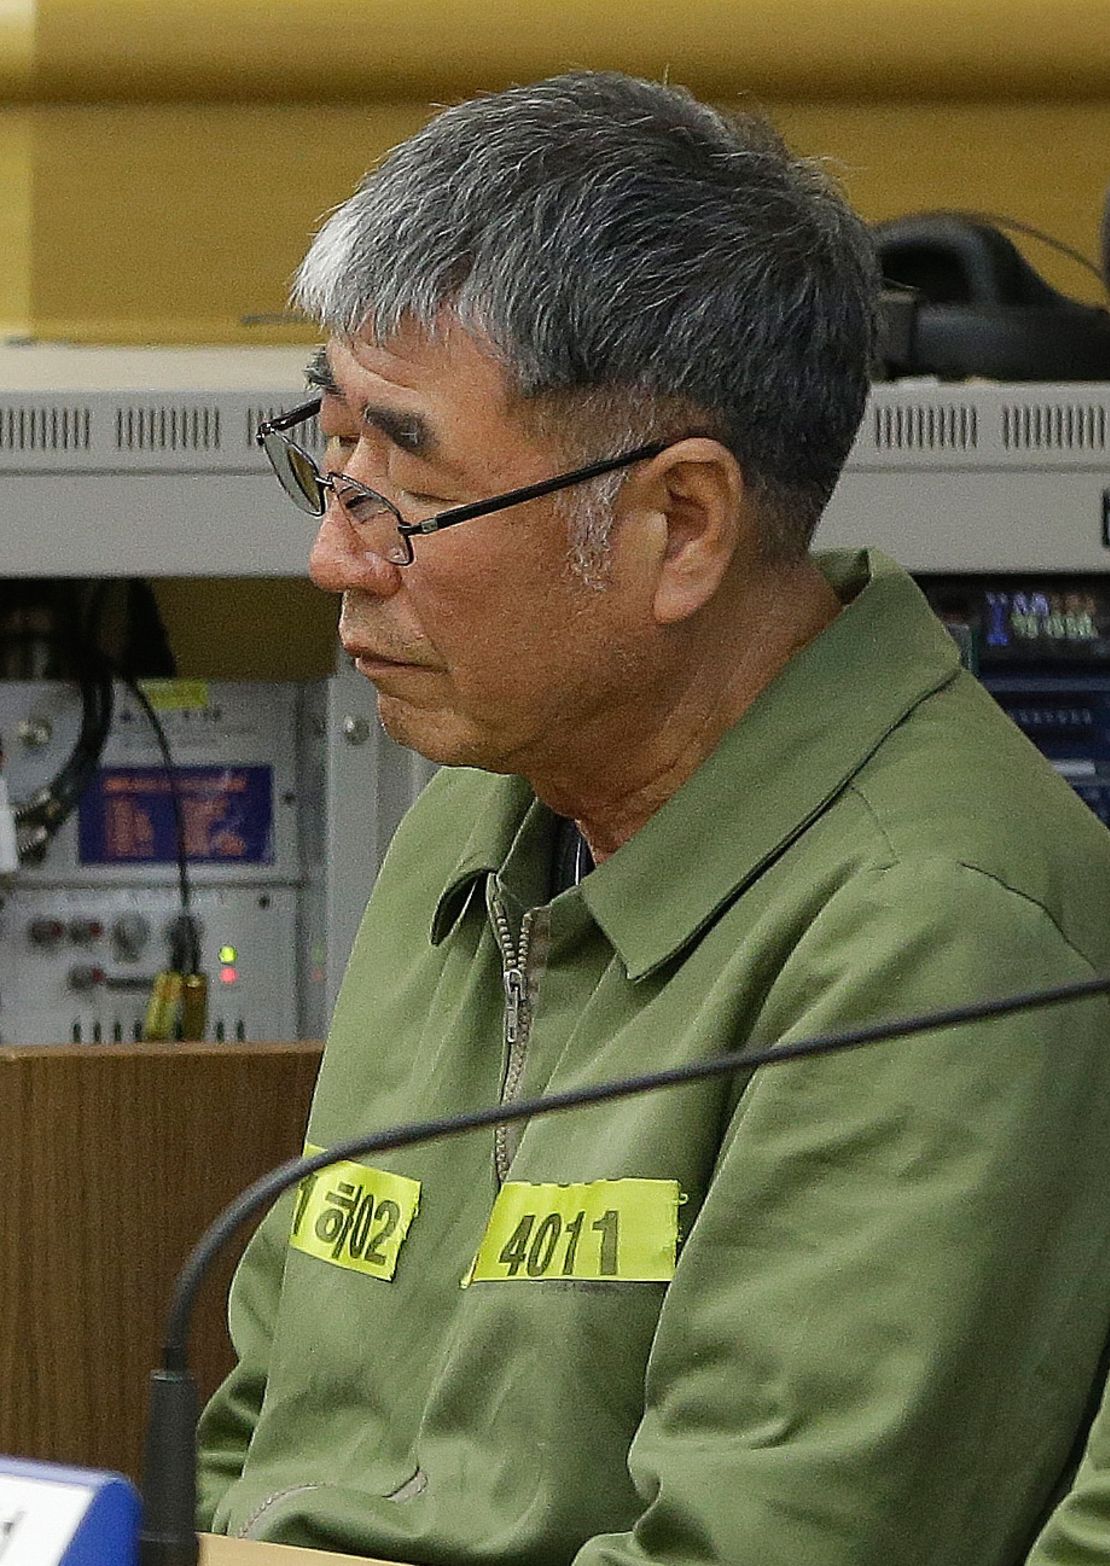 Lee Joon-seok in court